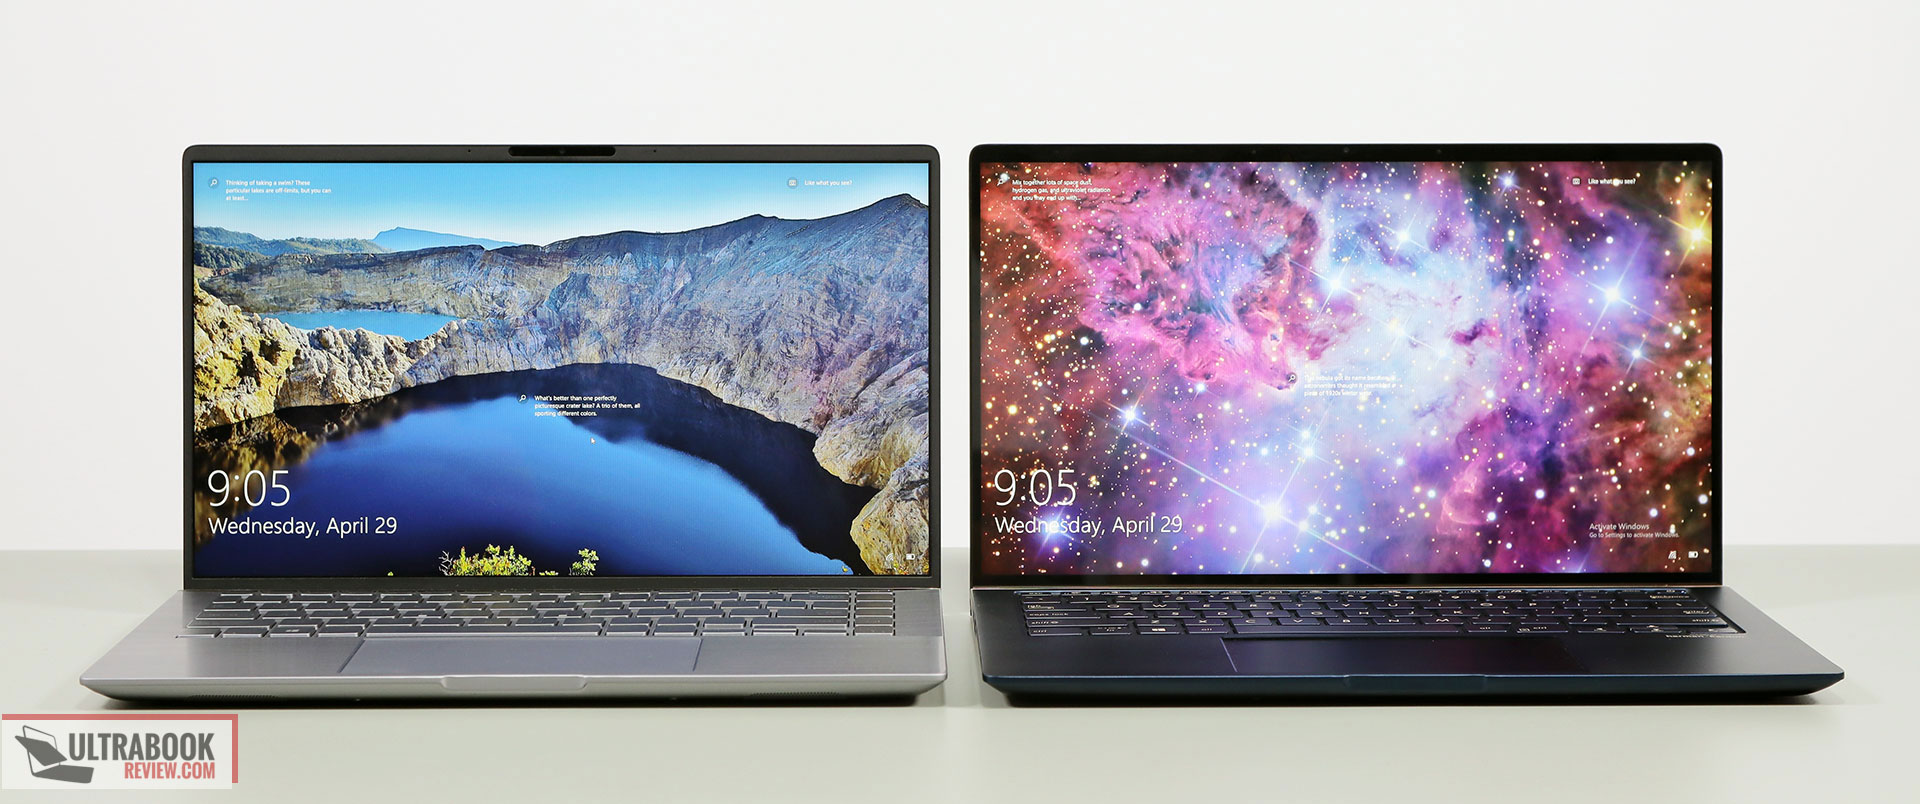 Asus ZenBook 14 comparison